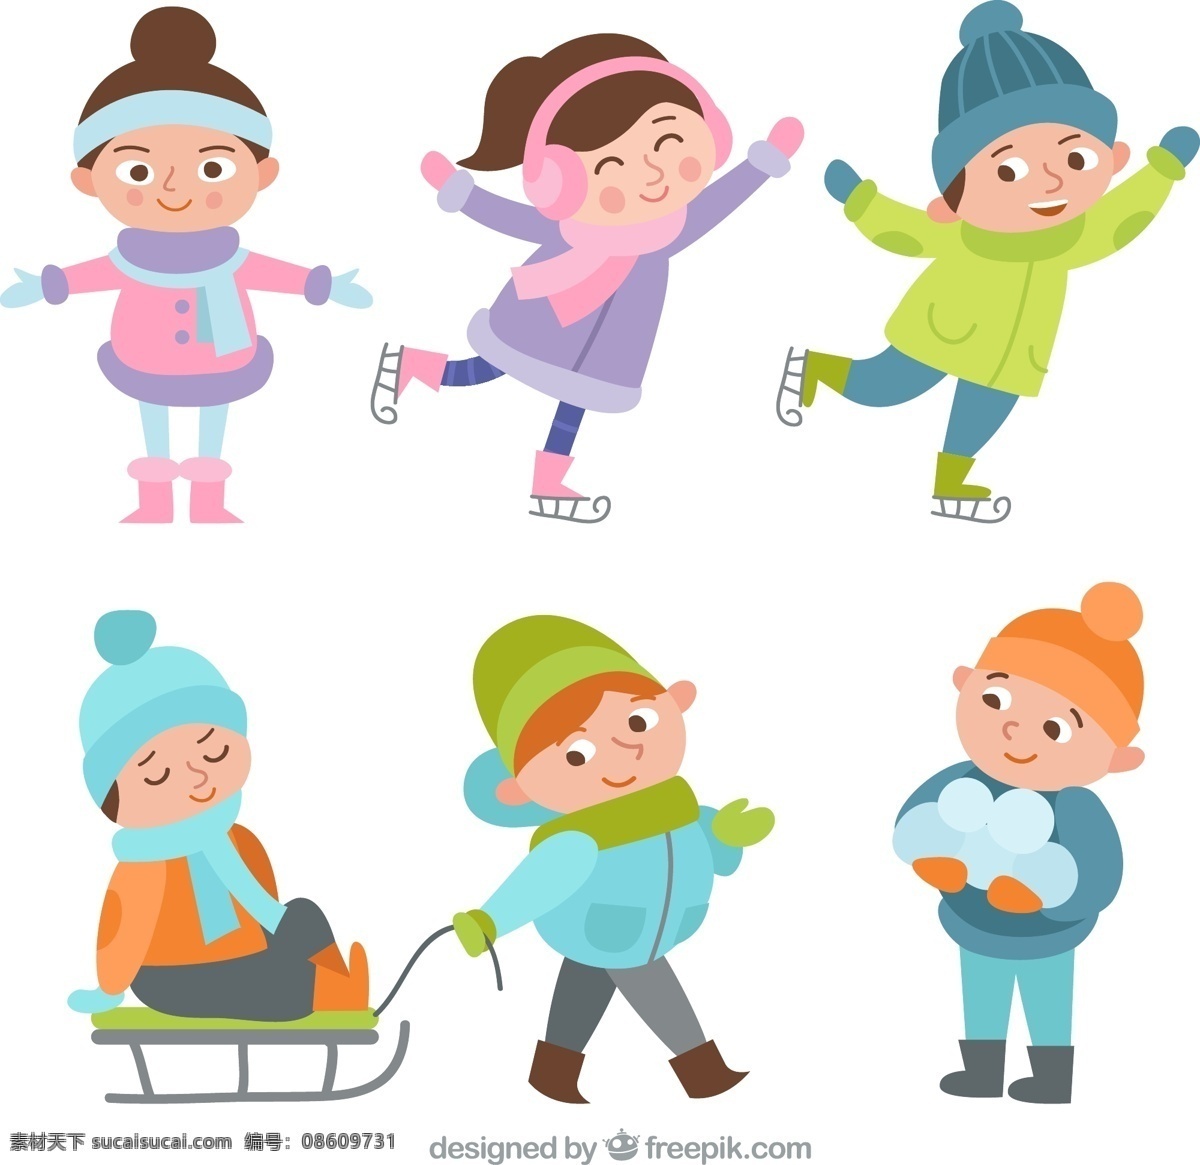 款 卡通 冬季 玩耍 儿童 溜冰 打雪仗 雪球 雪橇 男孩 女孩 动漫动画 动漫人物